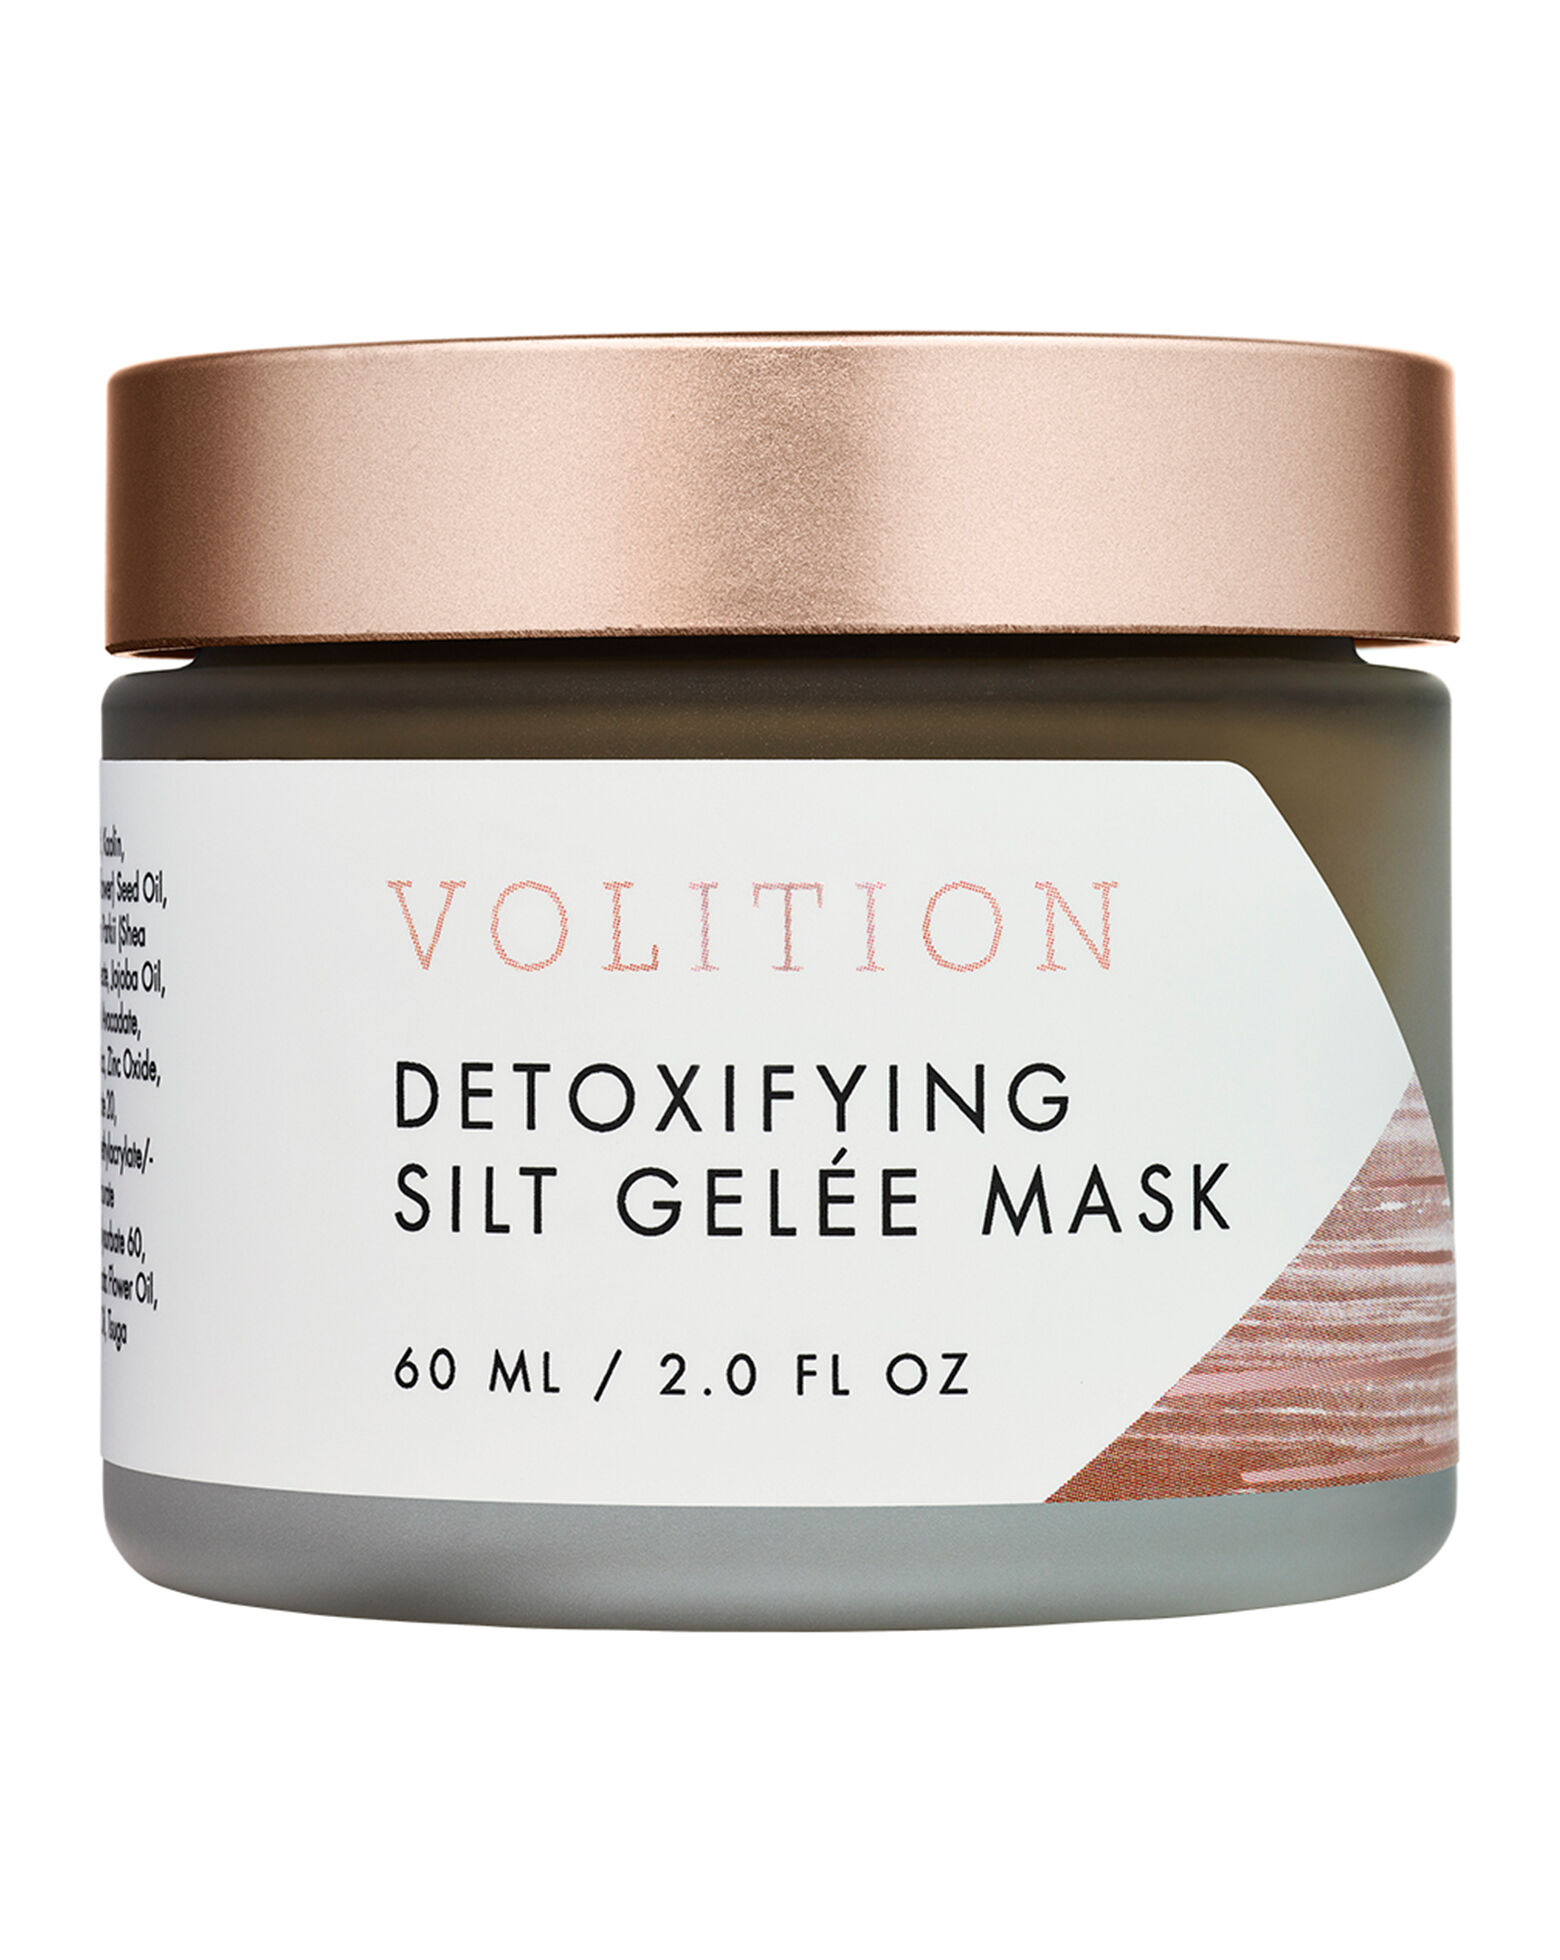 Volition - Detoxifying Silt Gelée Mask